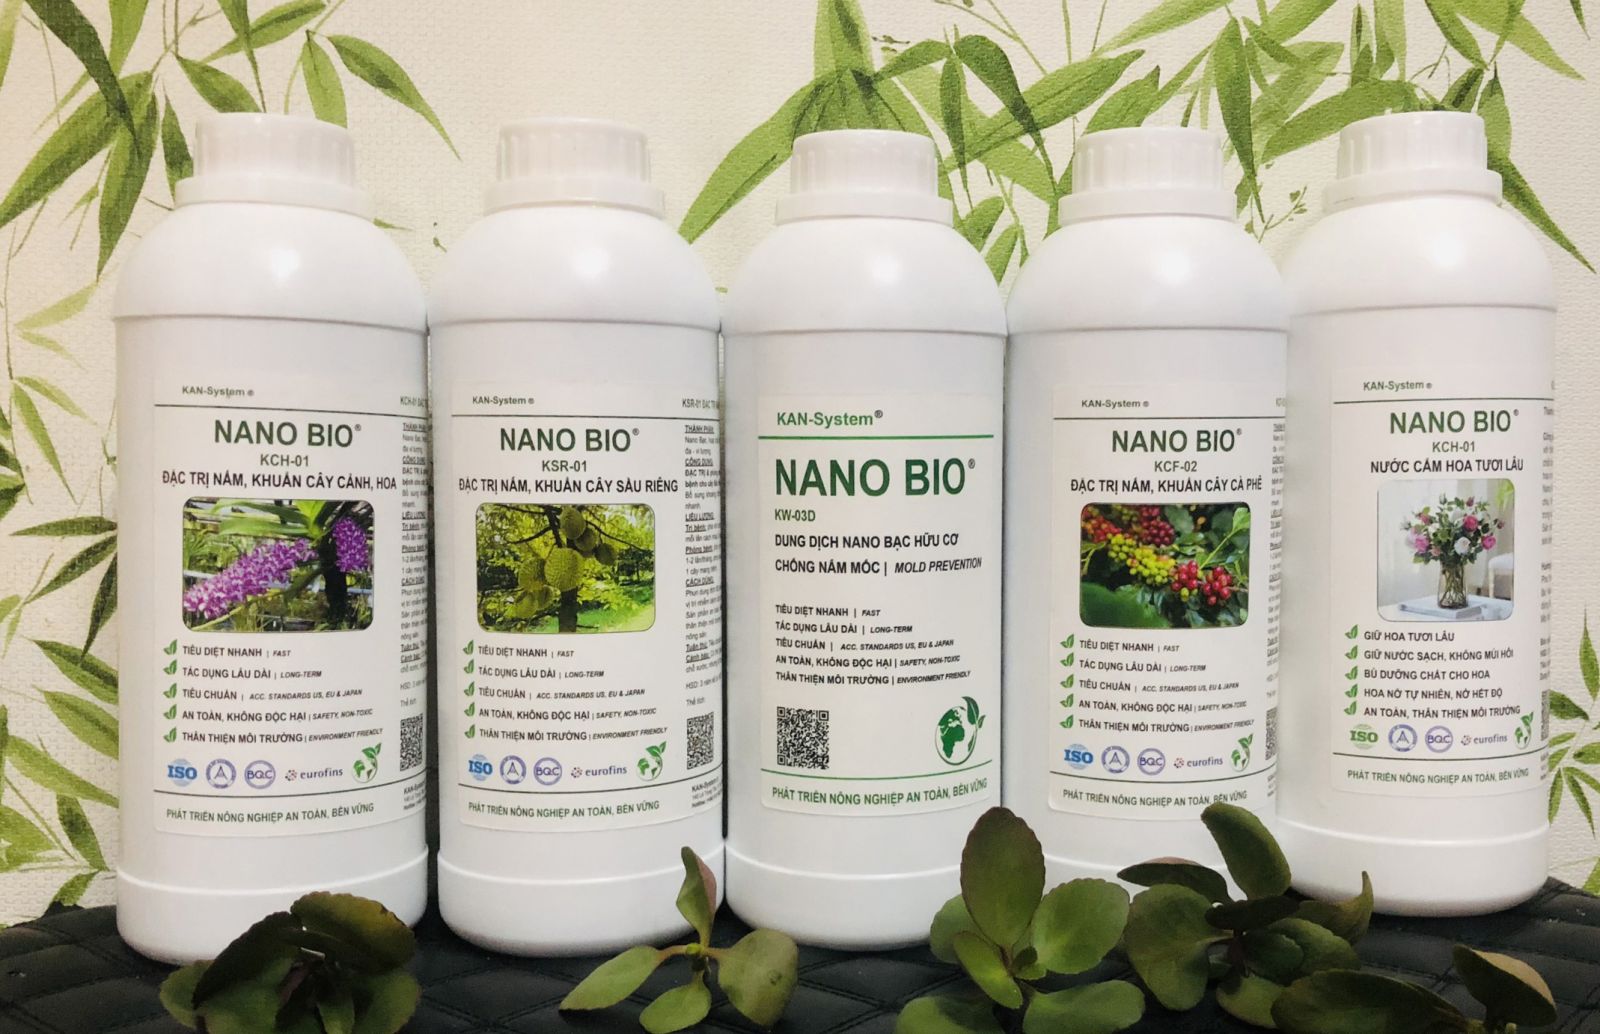 NANO BIO: ĐẶC TRỊ & phòng chống bệnh do nấm, vi khuẩn gây bệnh cho cây Hồ Tiêu